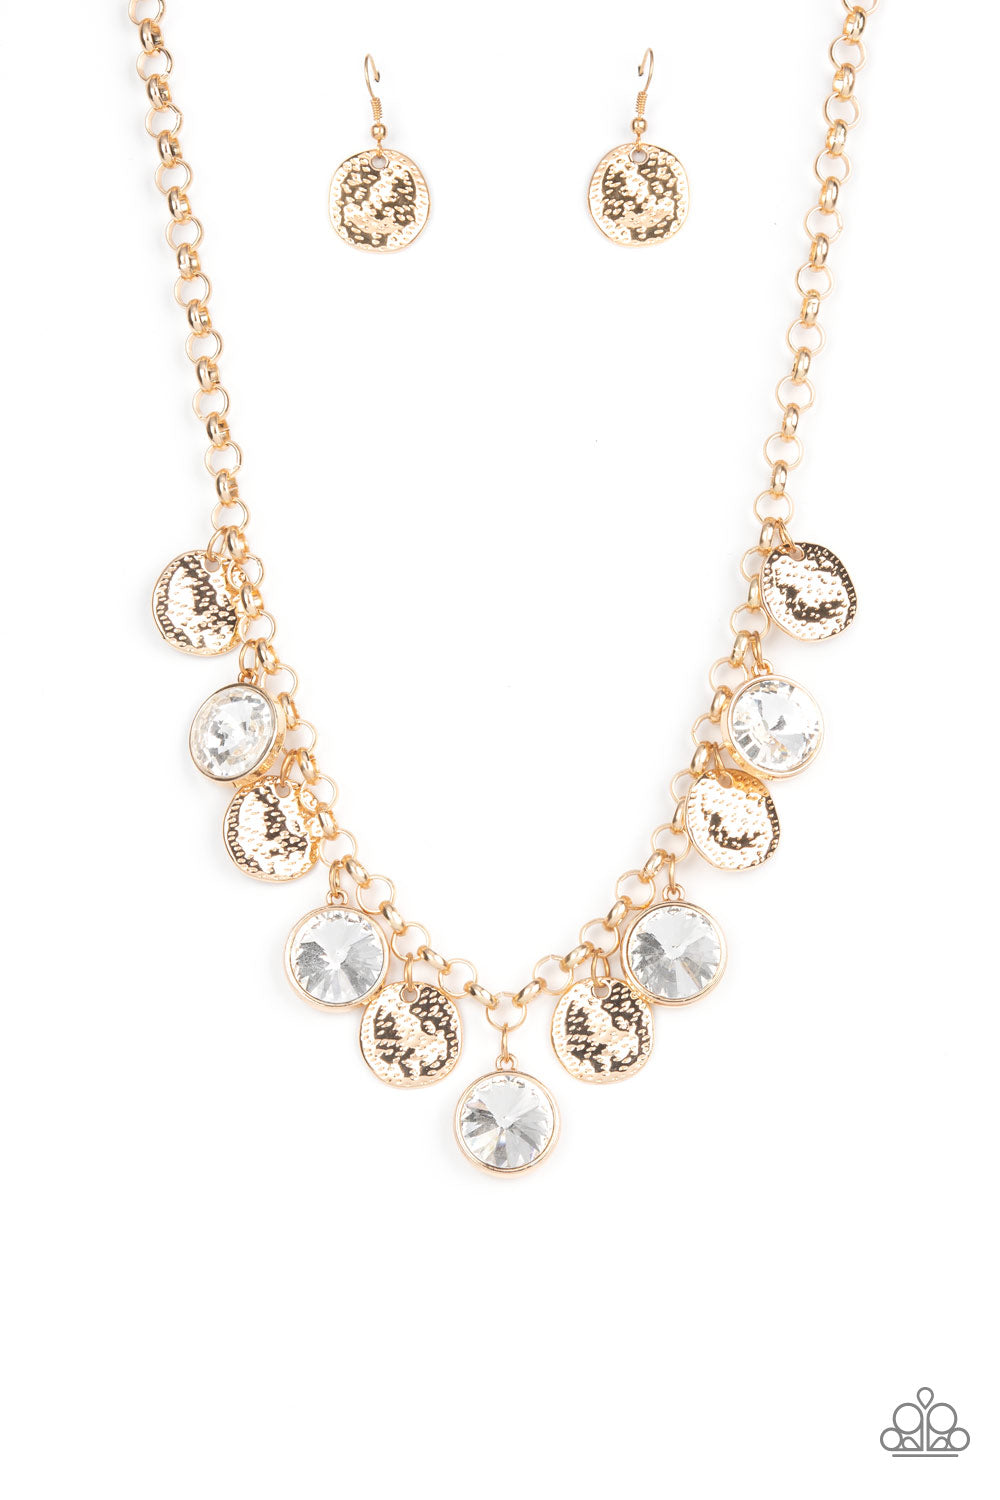 Spot On Sparkle Necklace__Gold